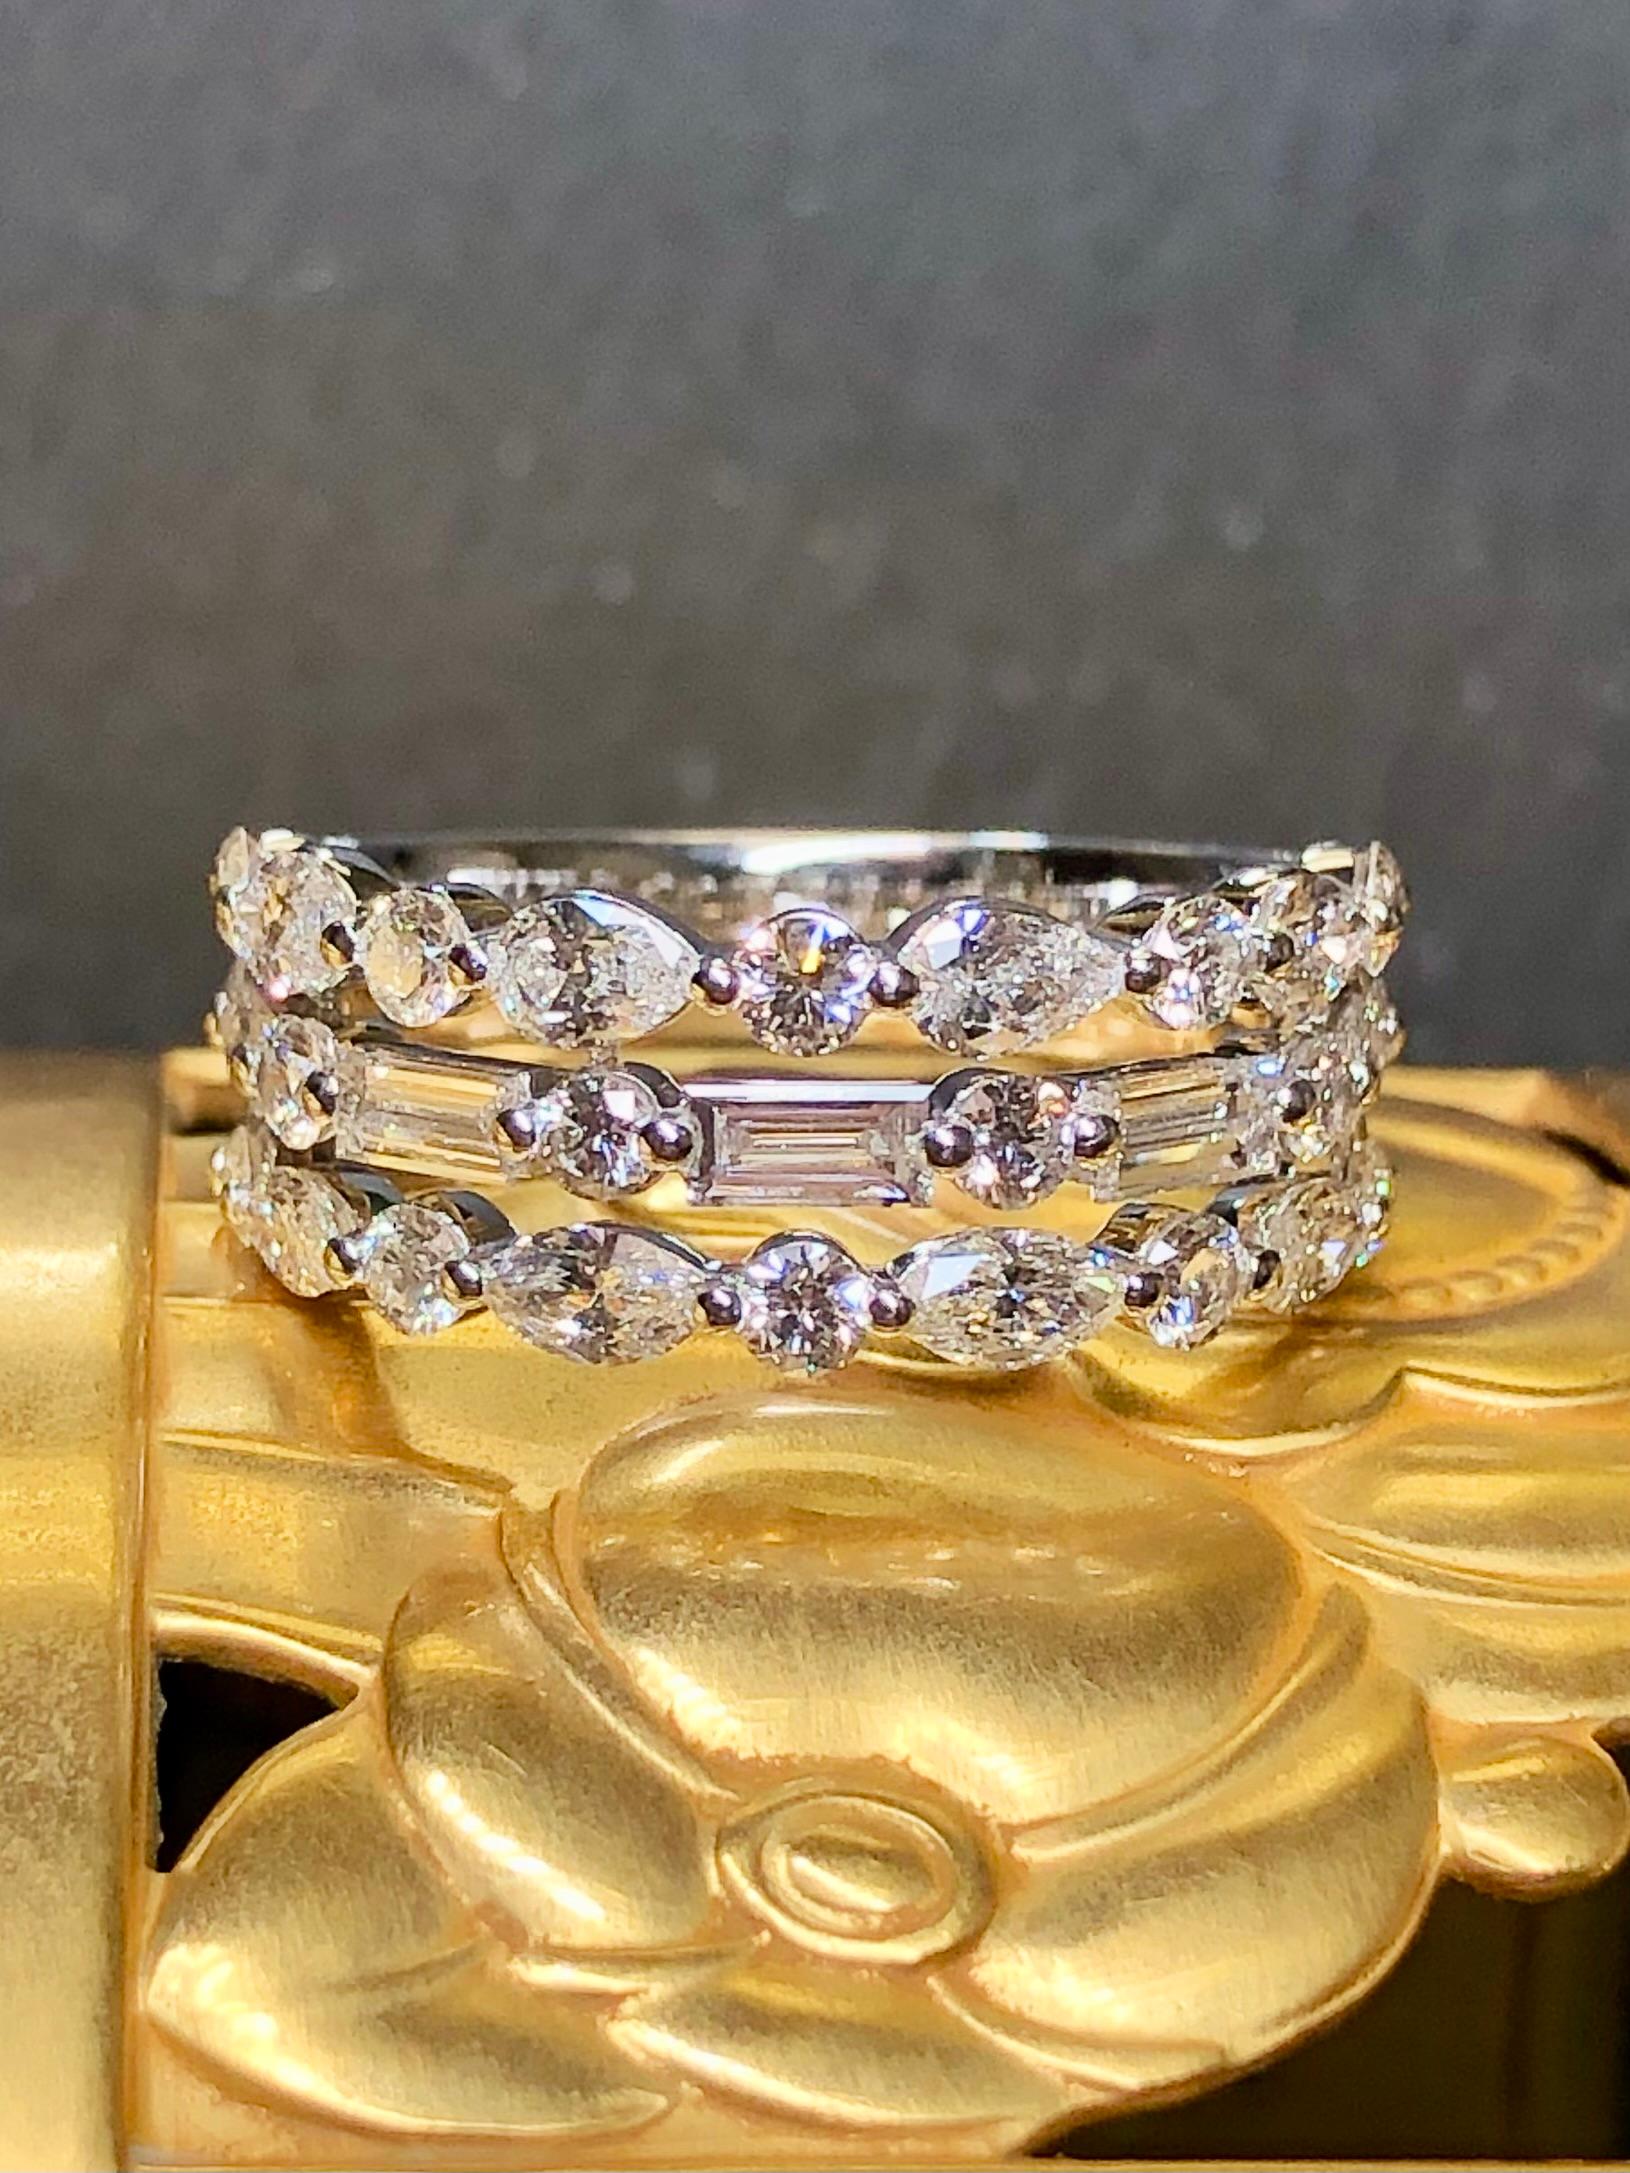 Die Premiere Diamant Jahrestag Band von NEIL LANE getan in 14K Weißgold und mit etwa 2cttw in G-I Farbe Vs1-2 Klarheit rund, Baguette, Marquise und Birne Form Diamanten gefasst.


Abmessungen/Gewicht:

Der Ring misst 8 mm, hat die Größe 7 und wiegt